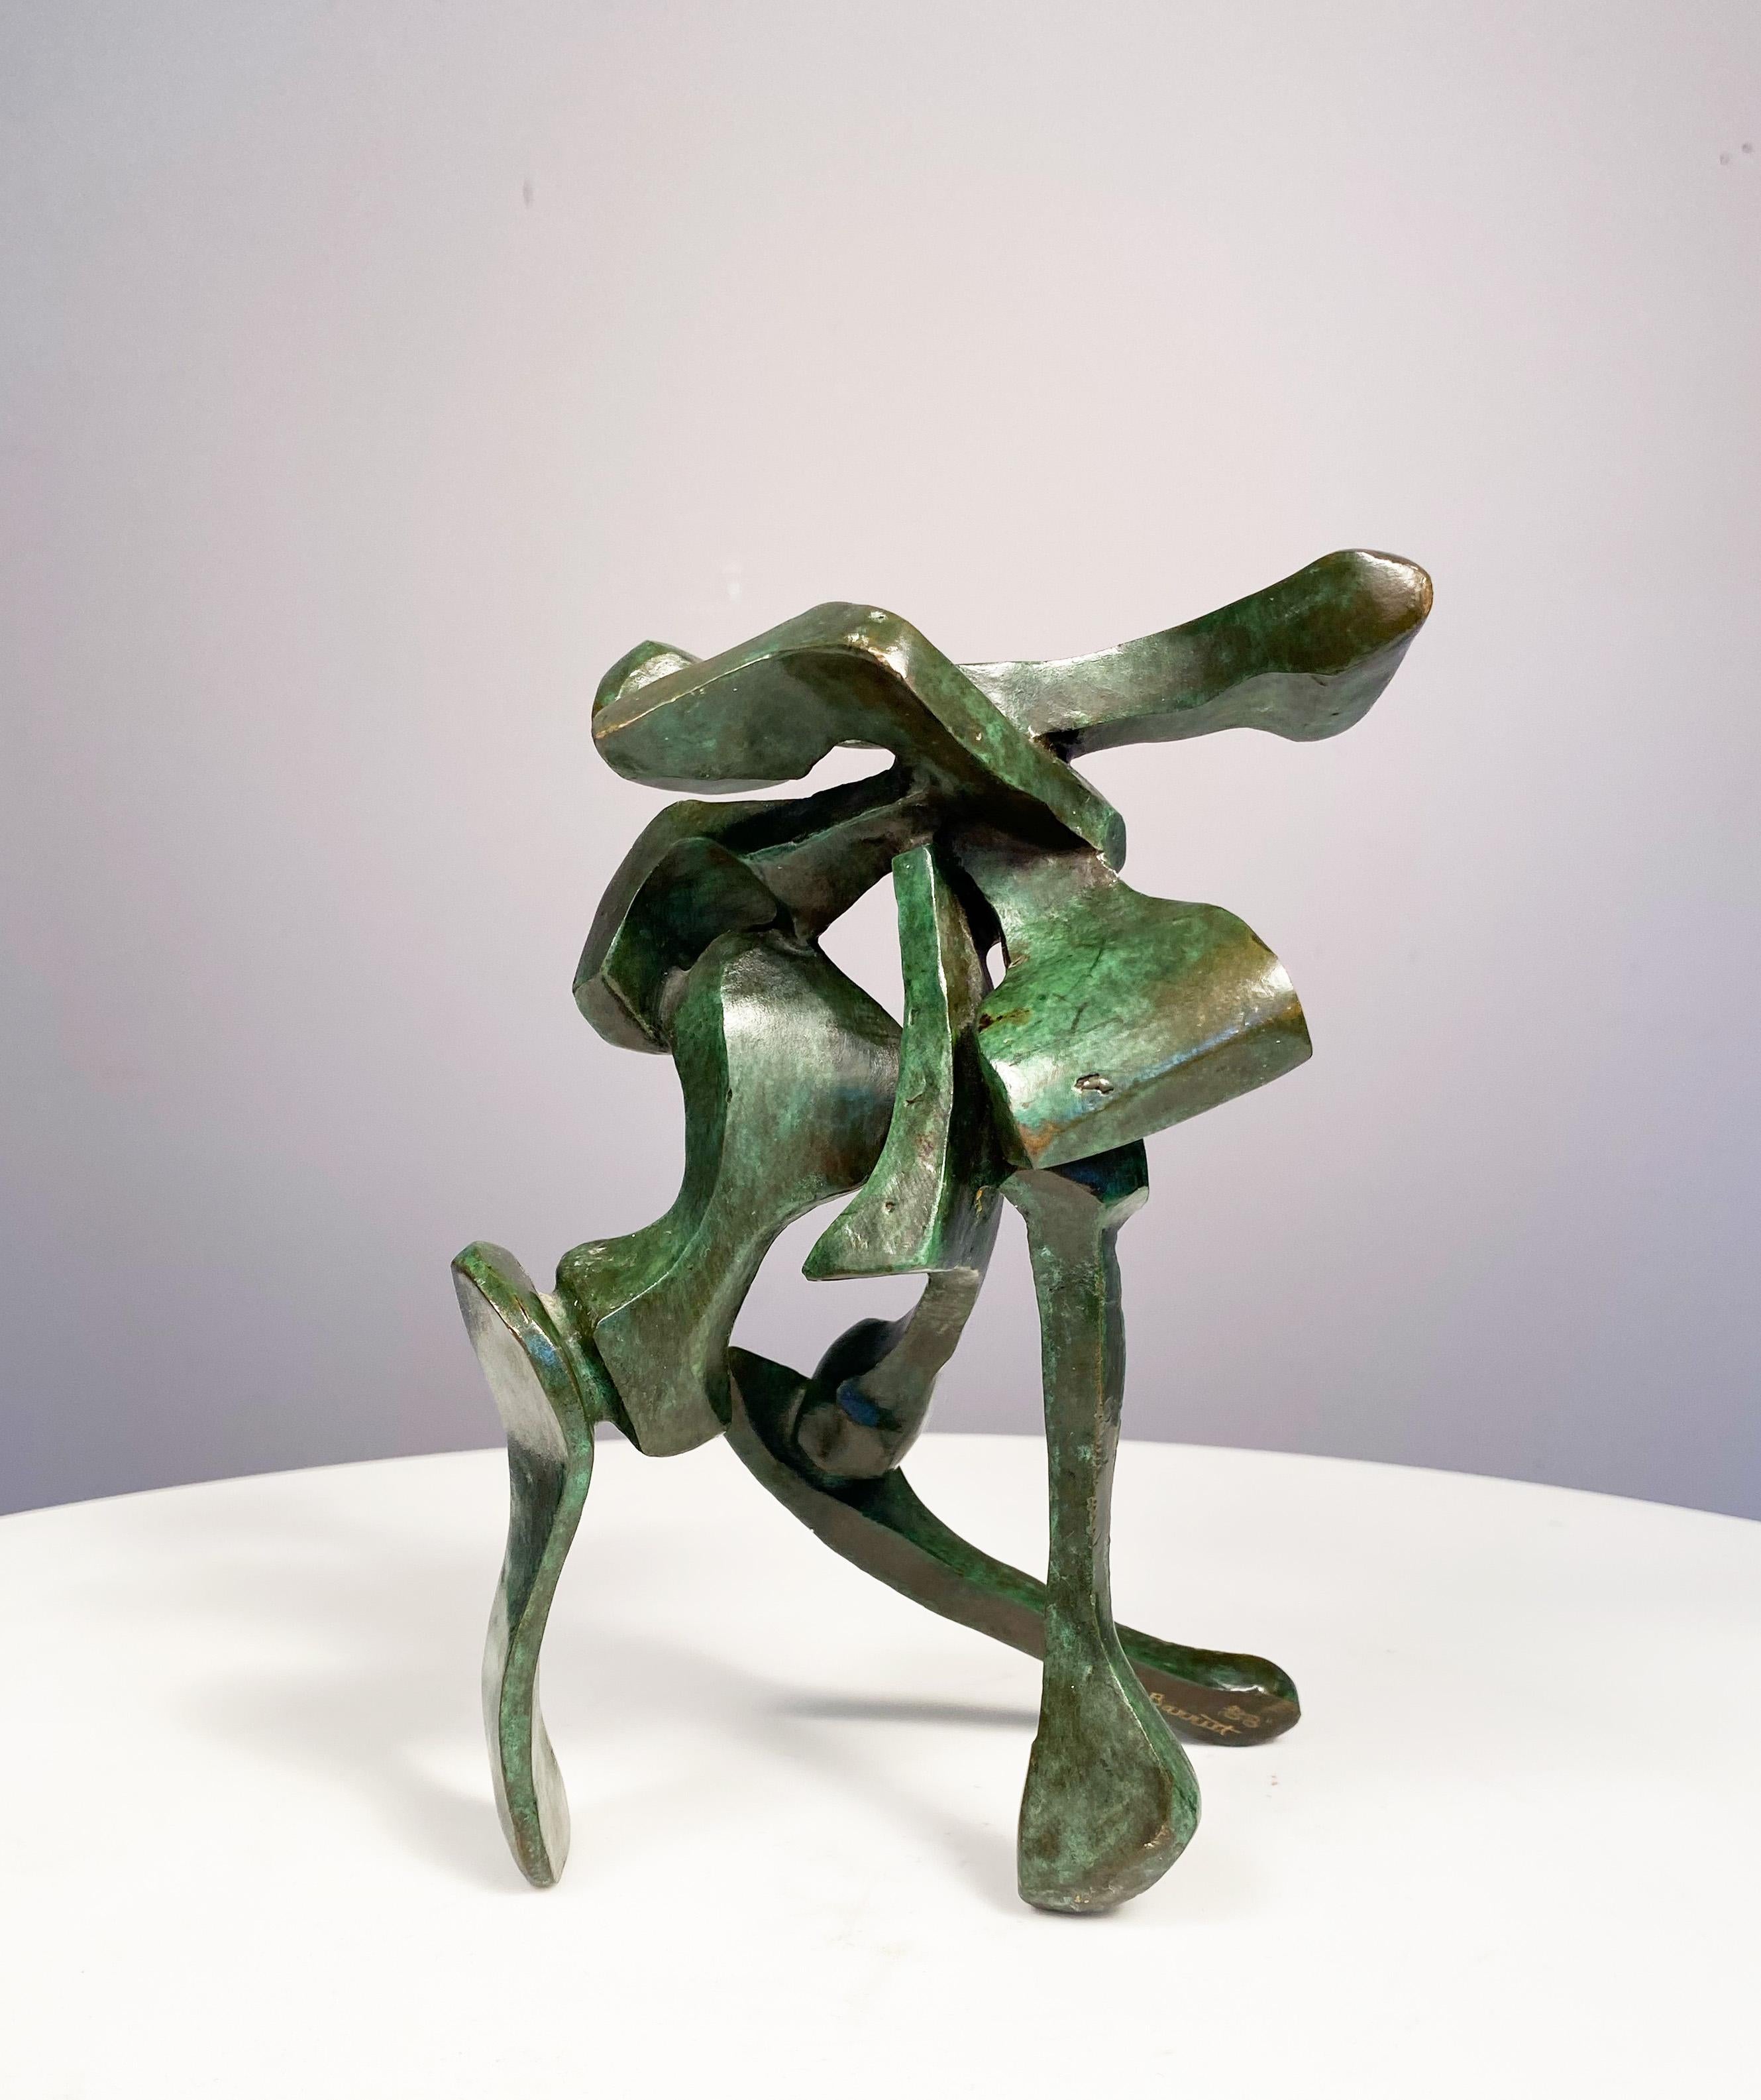 Bill Barrett Abstract Sculpture – Aufzeigen